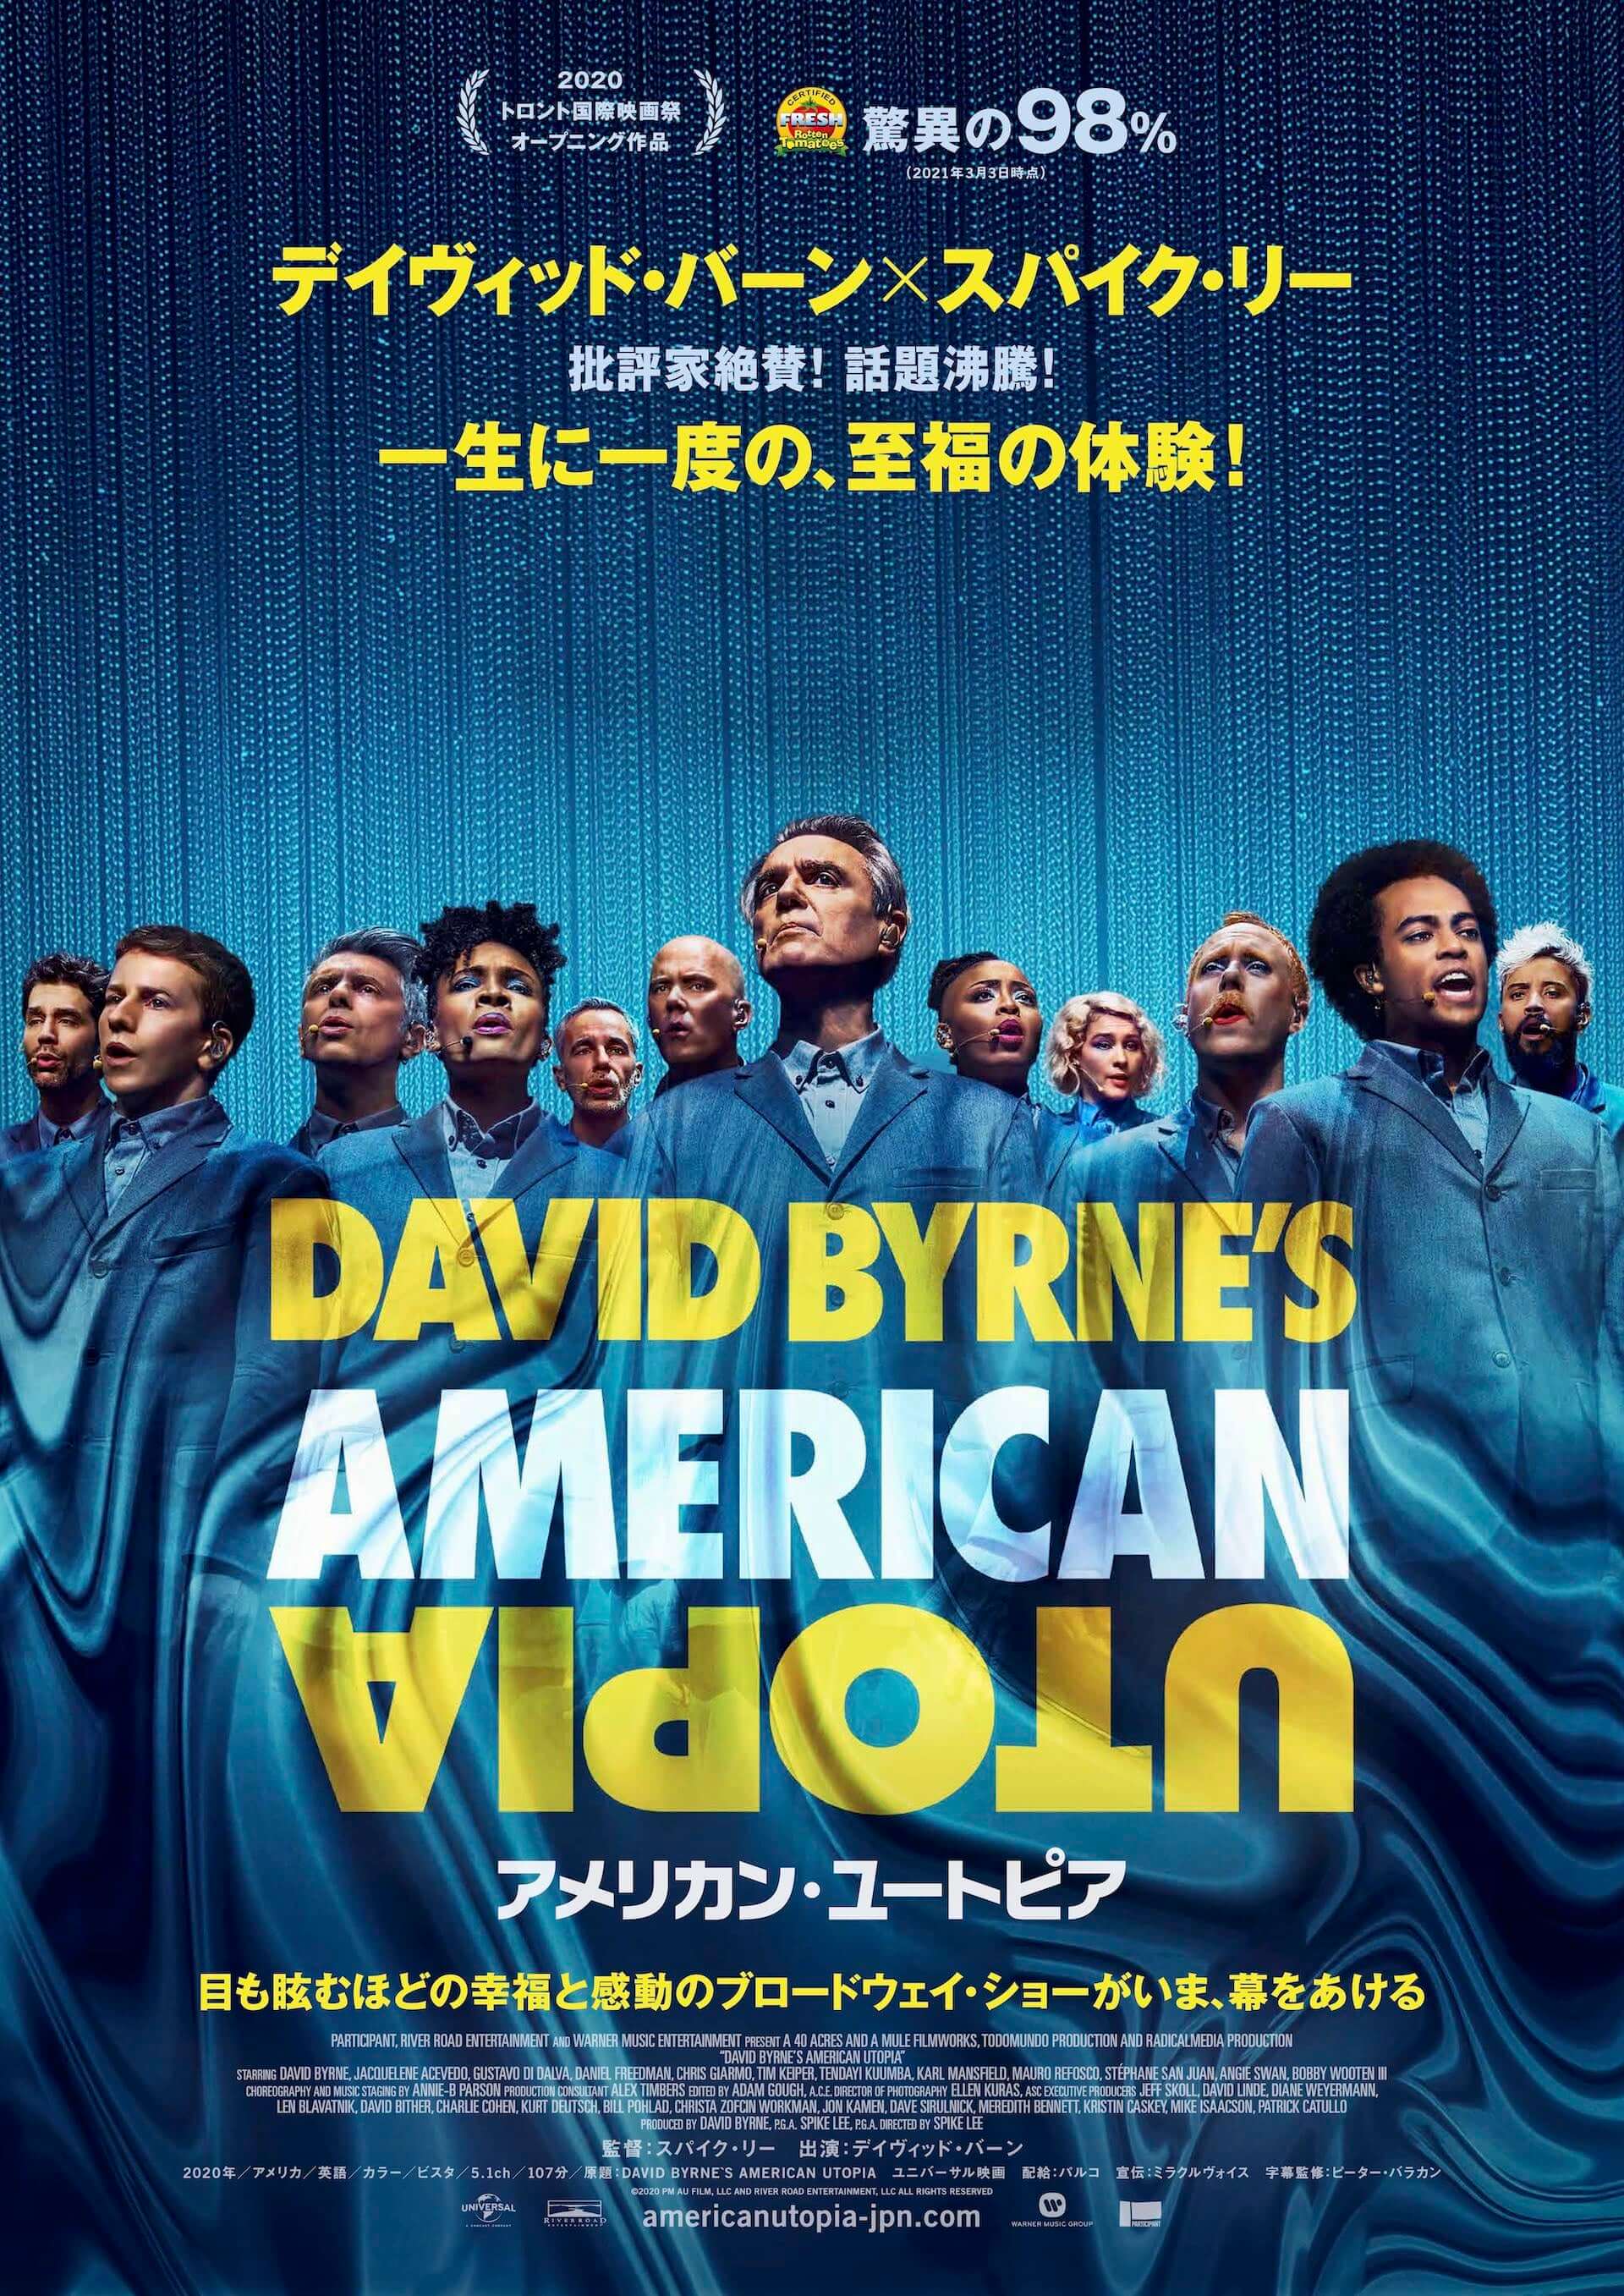 デイヴィッド・バーンとスパイク・リー監督のコラボ映画『アメリカン・ユートピア』が日本公開決定。ピーター・バラカンが字幕監修